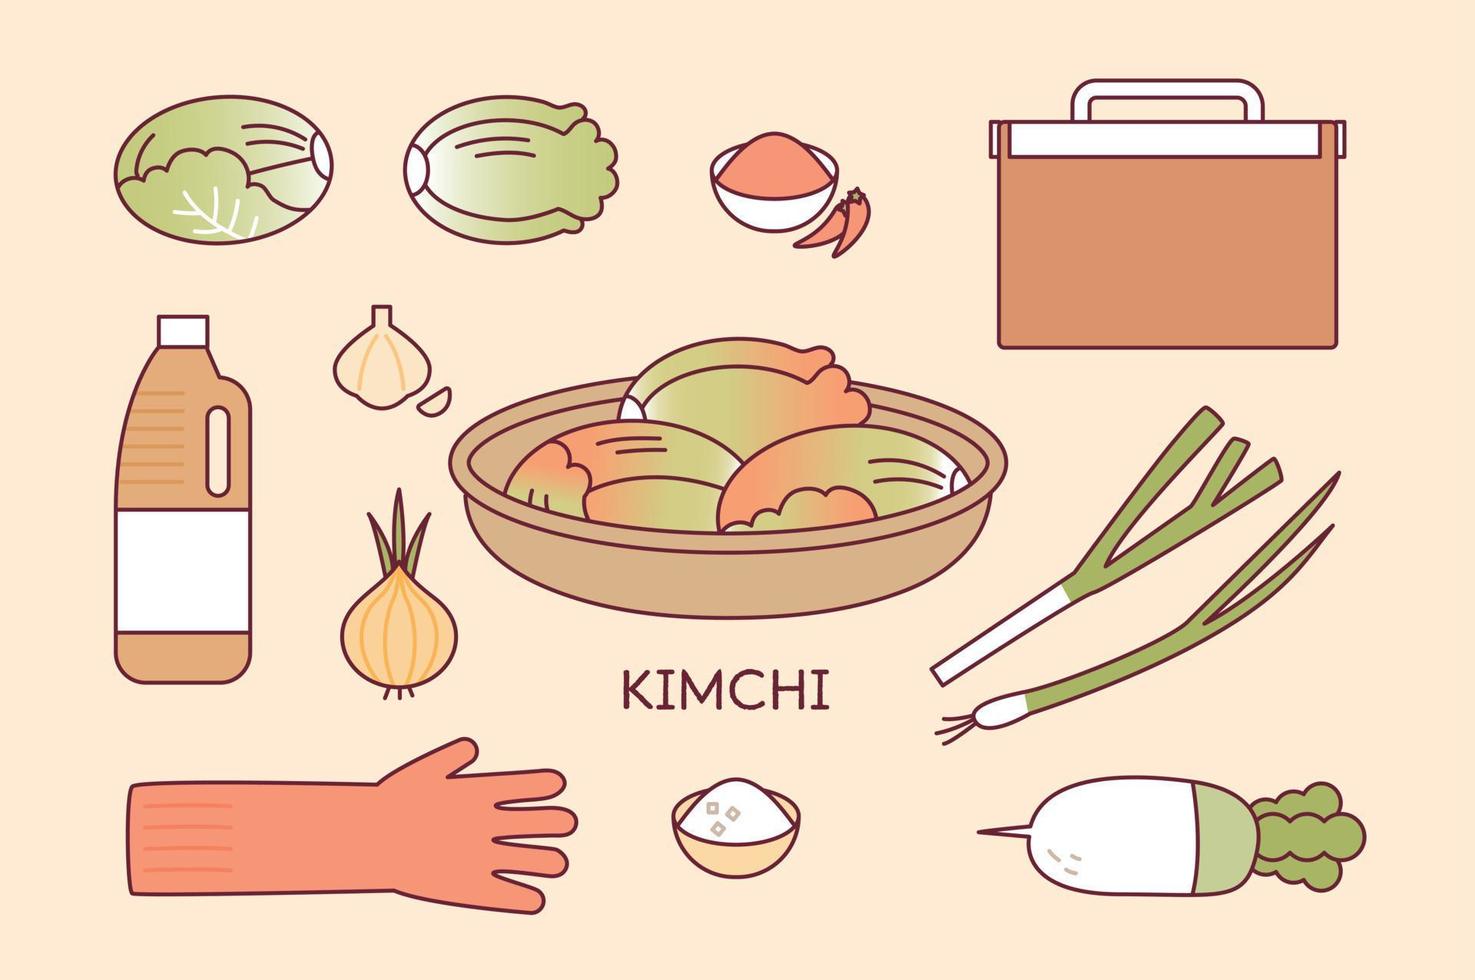 ingredientes para fazer kimchi coreano. repolho, molho de soja, cebola, rabanete, sal, cebolinha, pimenta vermelha em pó, alho, luvas de borracha. vetor